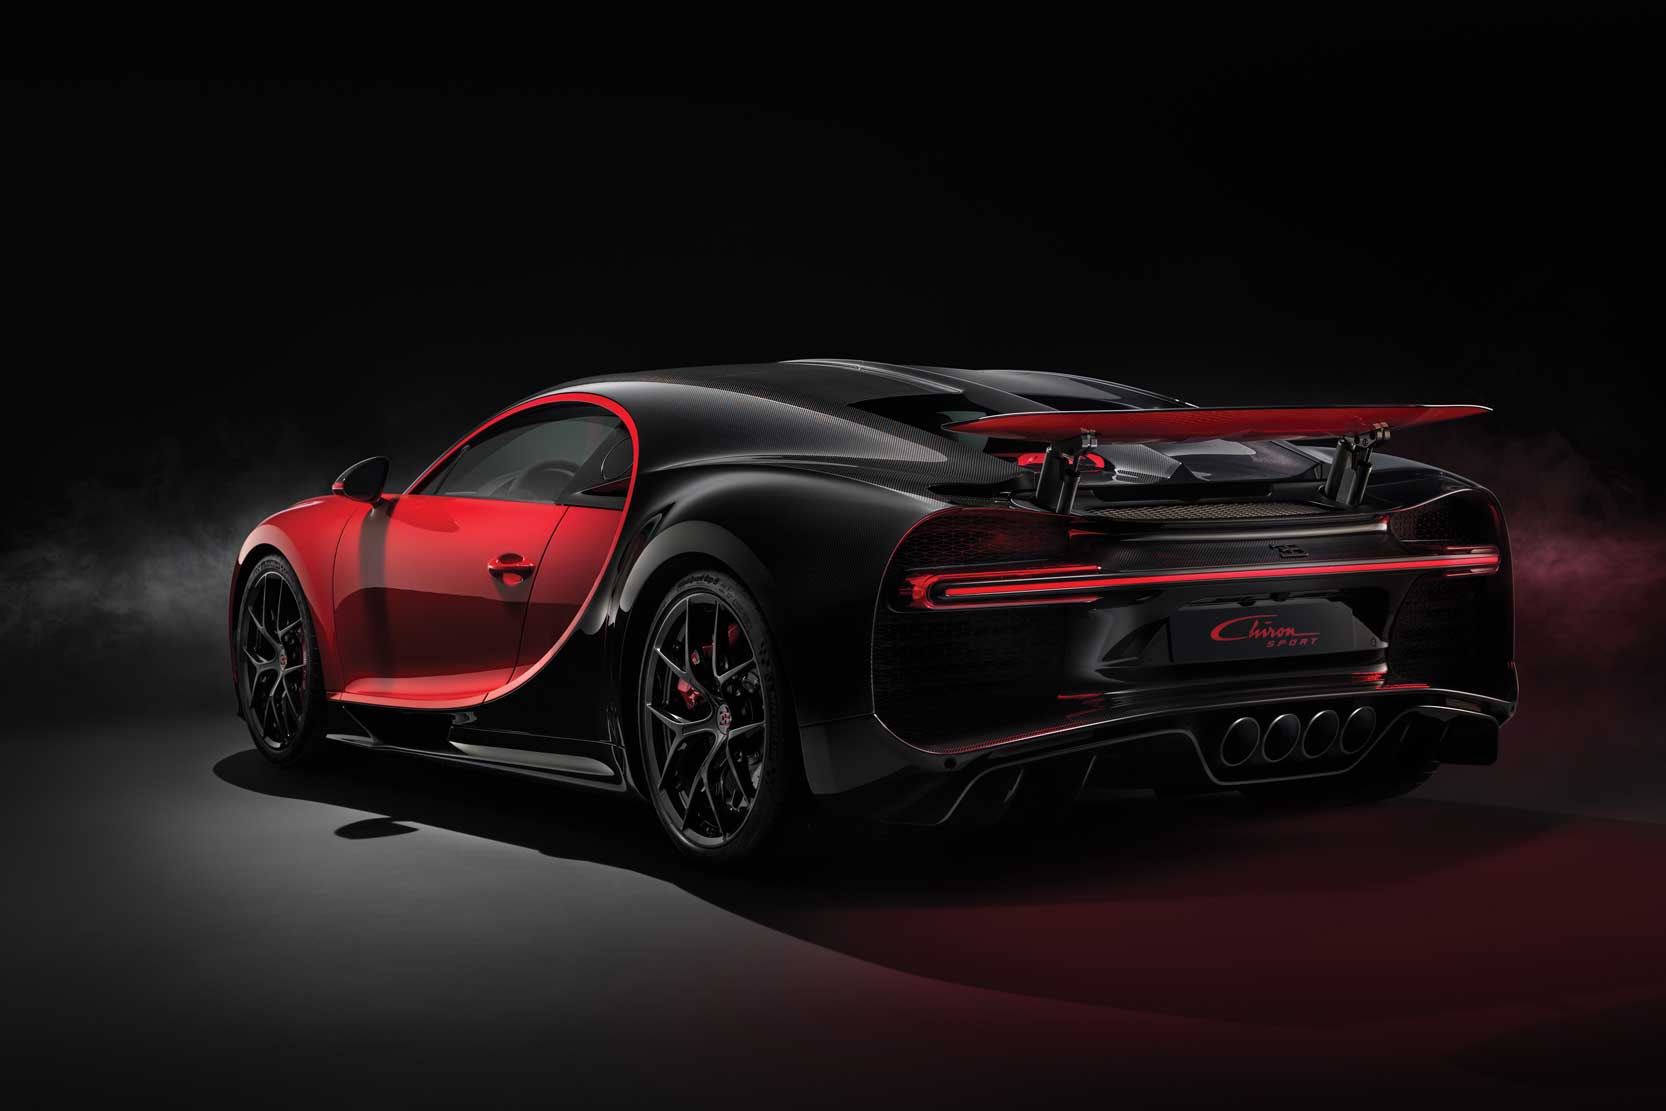 Image principale de l'actu: Bugatti preparerait une chiron plus sportive pour geneve 